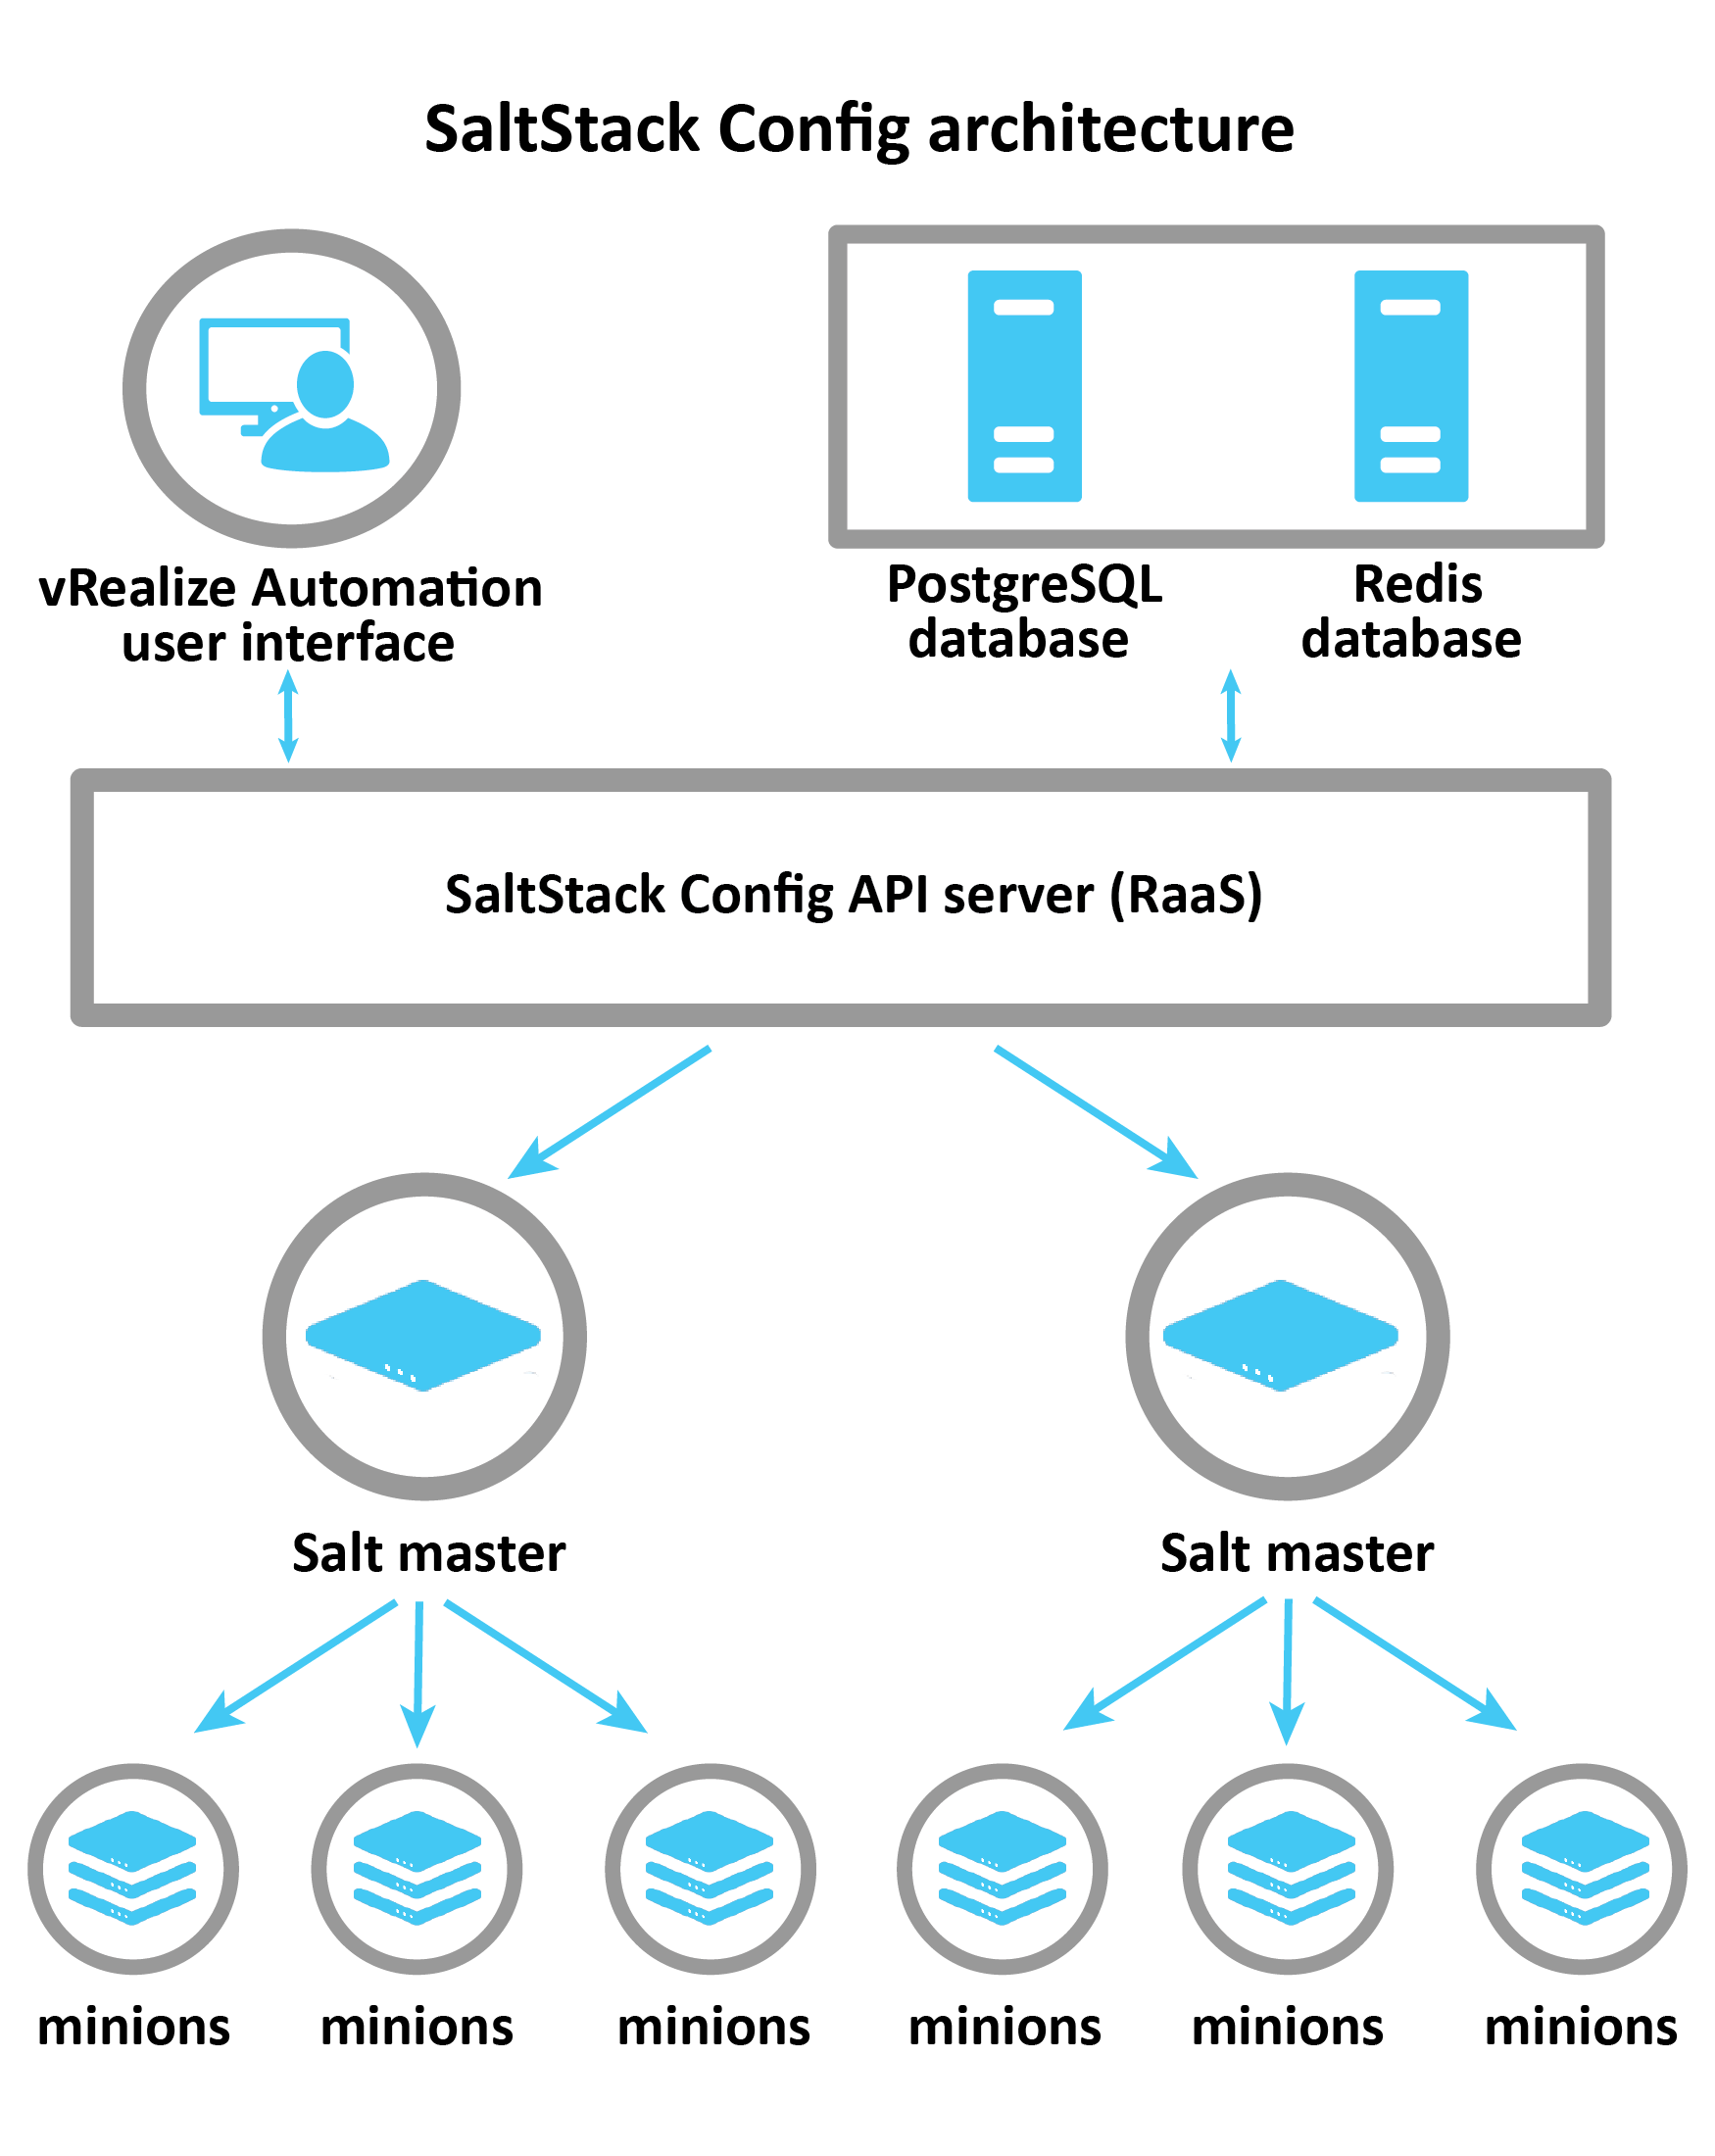 Diagramme expliquant l'architecture SaltStack Config : vRA, Postgress et Redis connectés au serveur RaaS, qui contrôle les masters Salt. Les masters Salt transmettent ensuite les informations à des minions individuels.